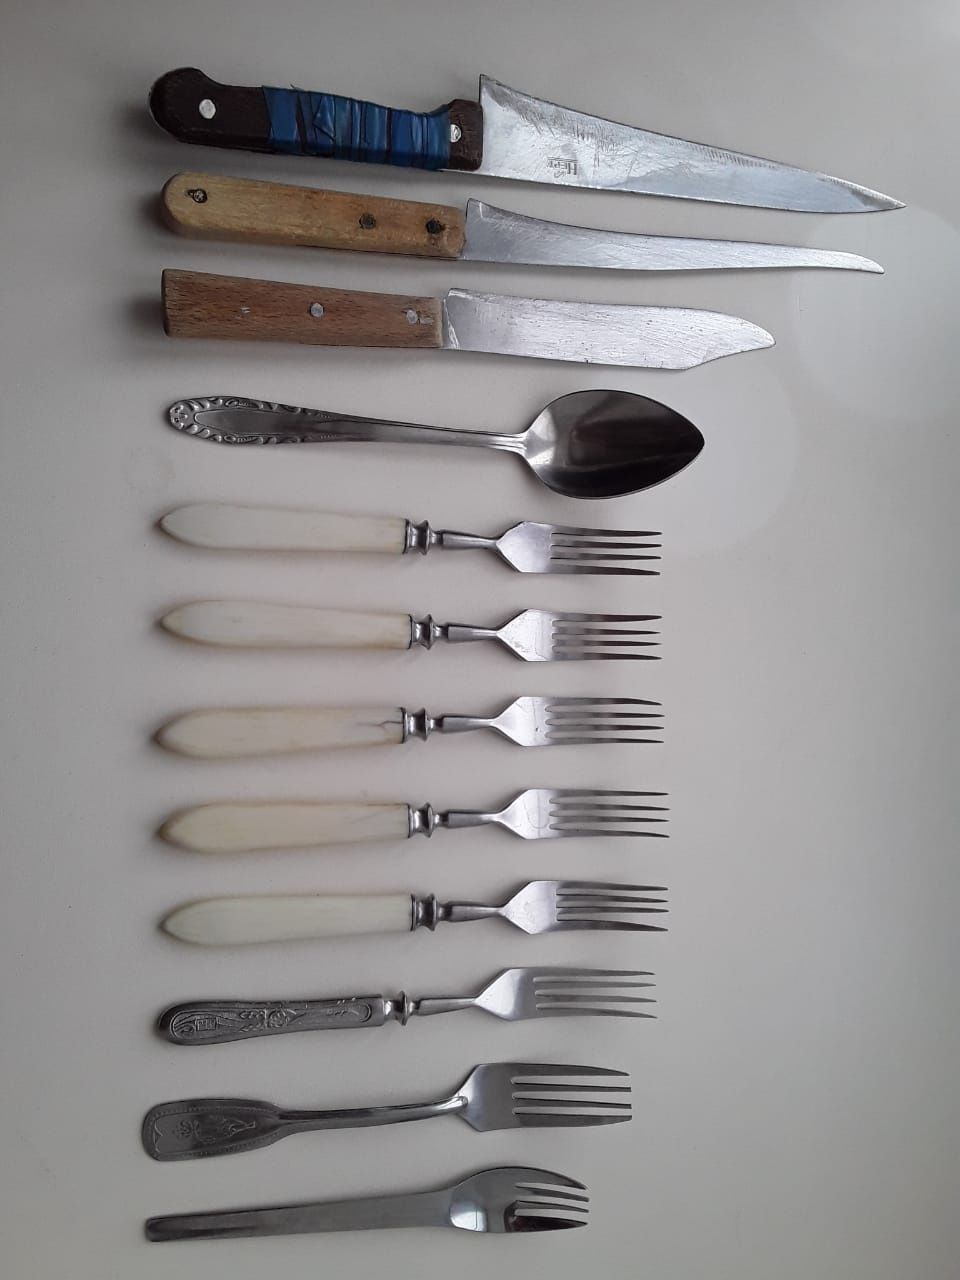 Ложки, вилки, ножи, поварешки и др. по договорным ценам